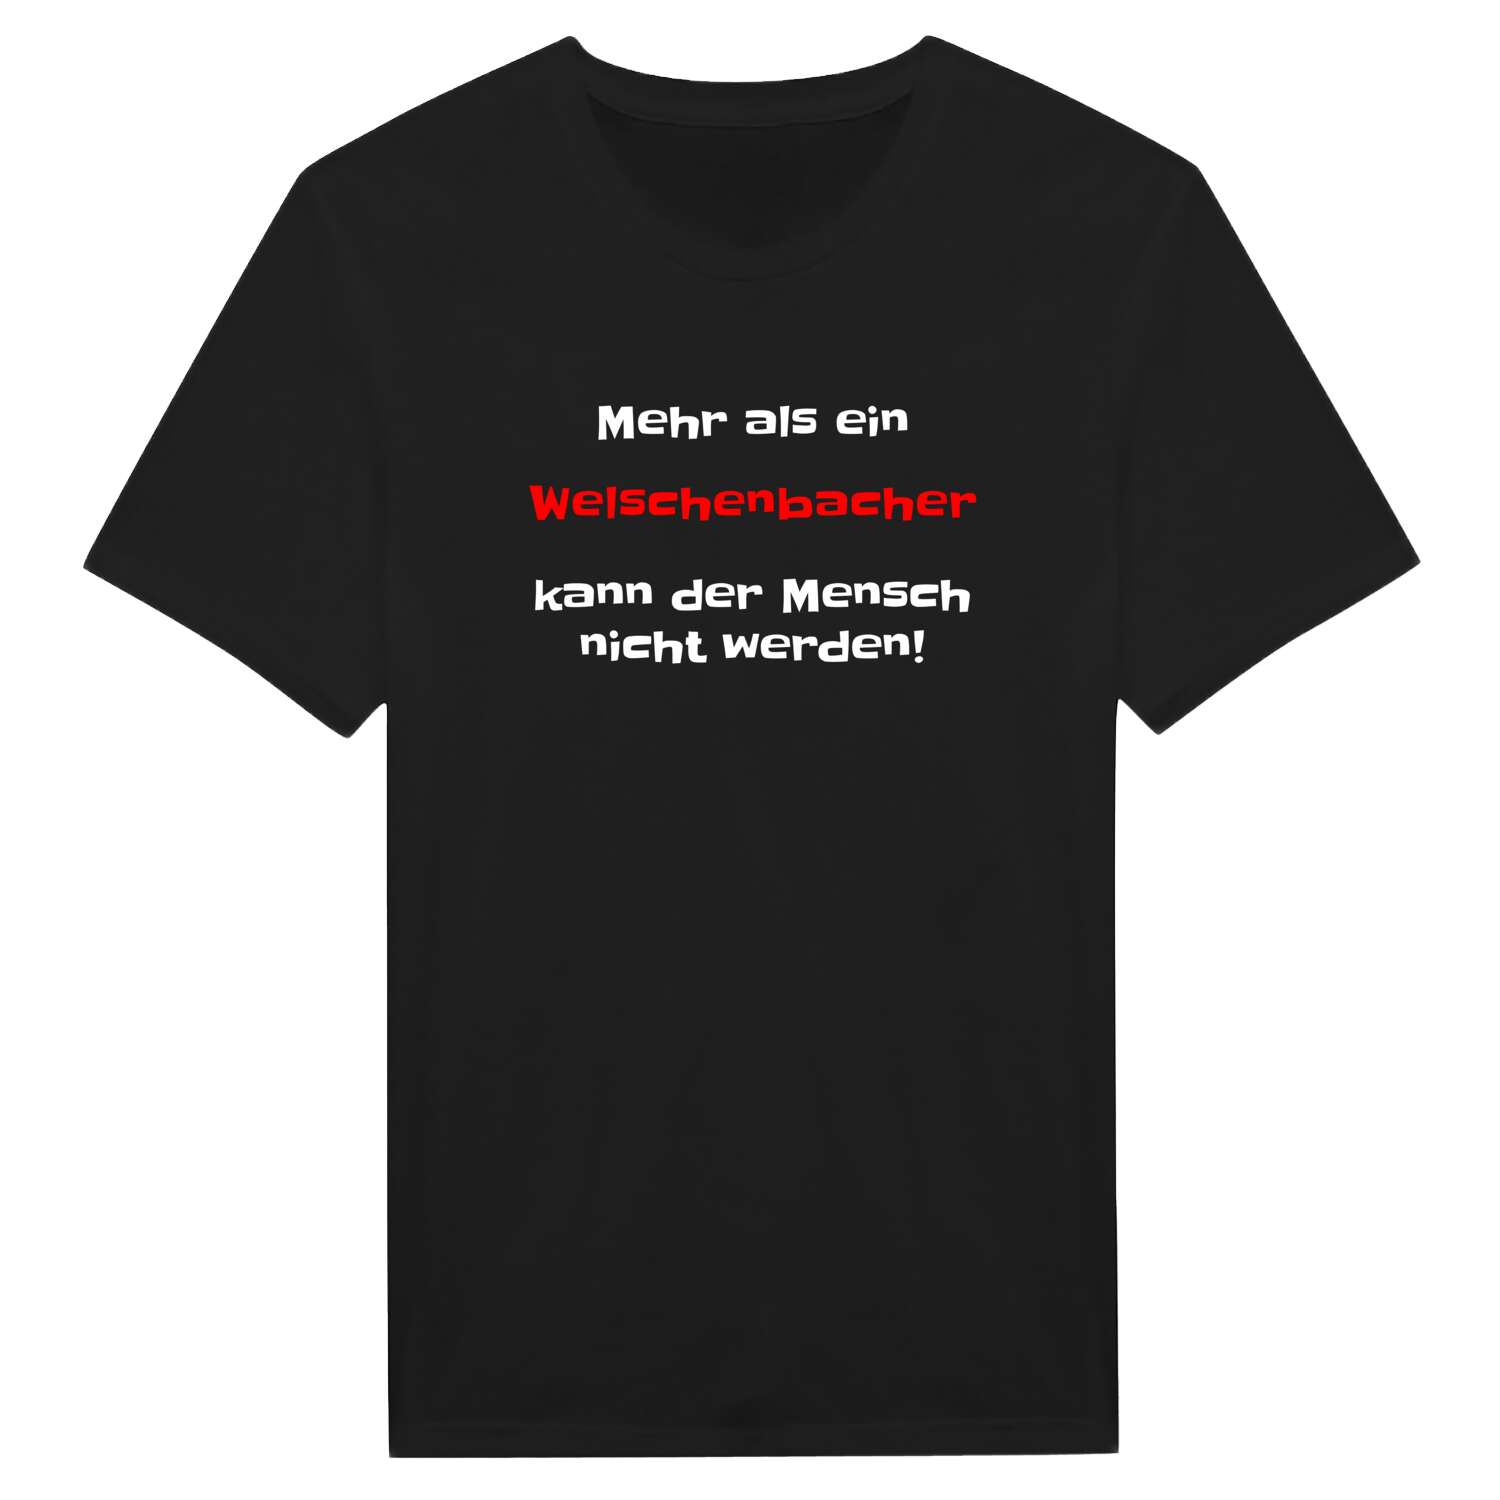 Welschenbach T-Shirt »Mehr als ein«